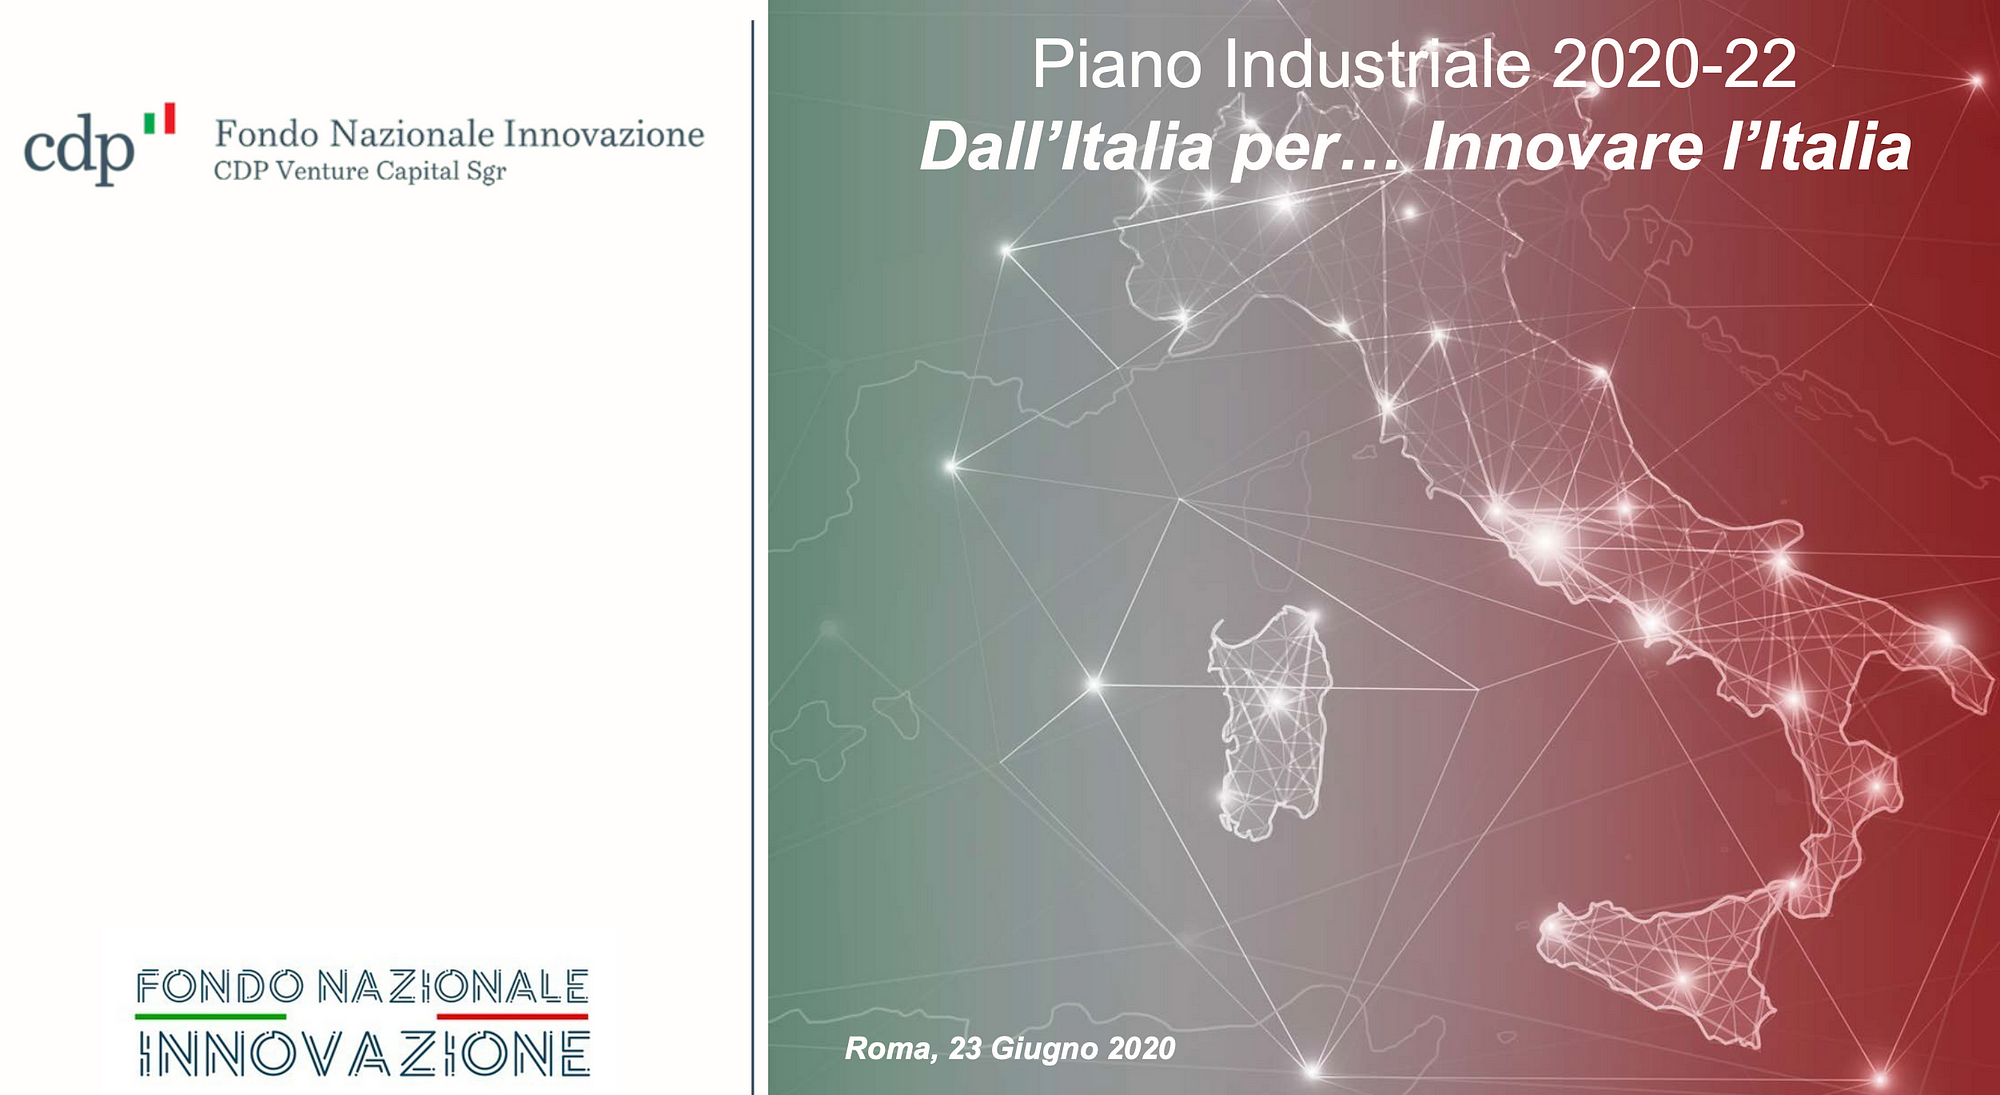 Piano Industriale 2020 2022 Fondo Nazionale Innovazione By Francesca Bria Medium